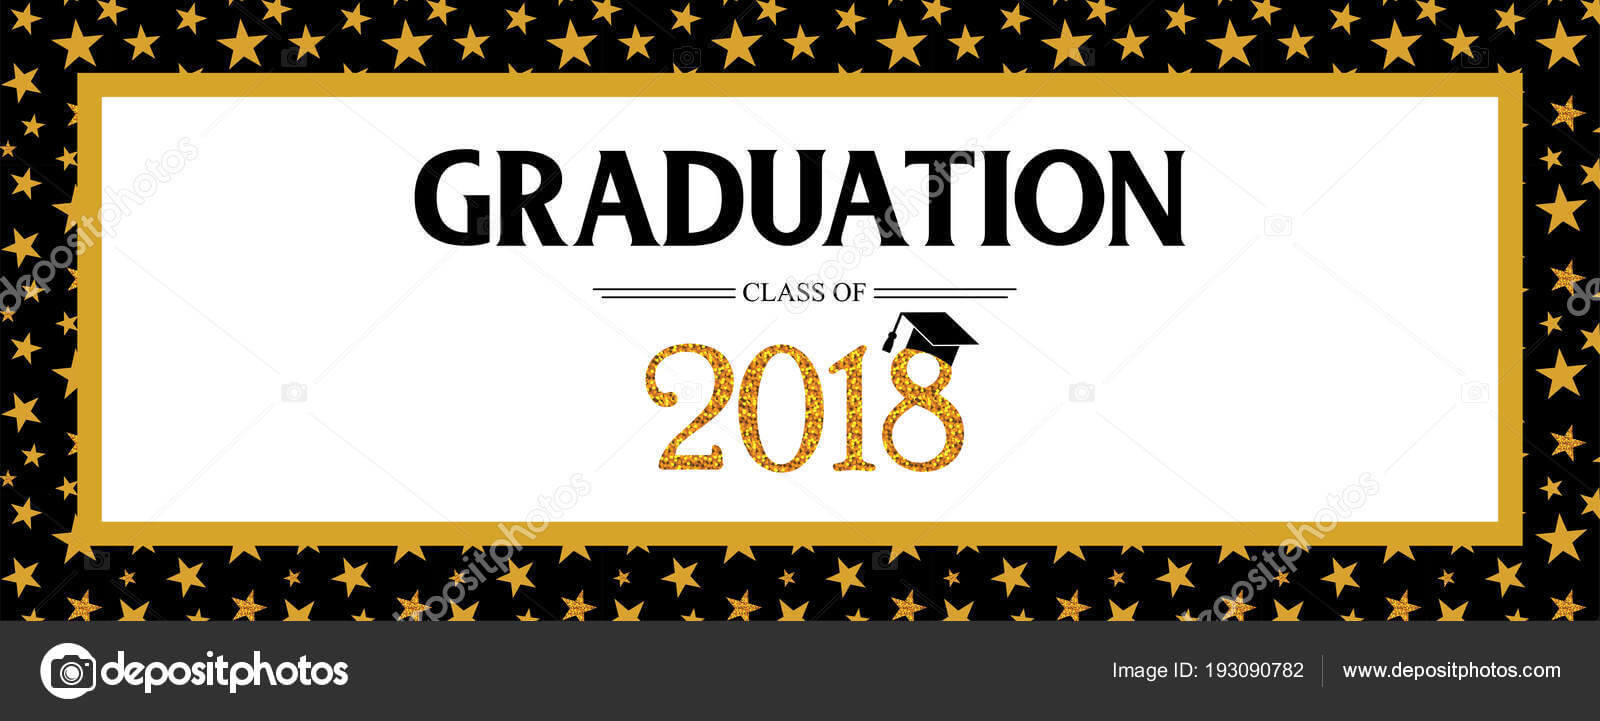 Graduation Banner Template | Graduation Class Of 2018 With Graduation Banner Template